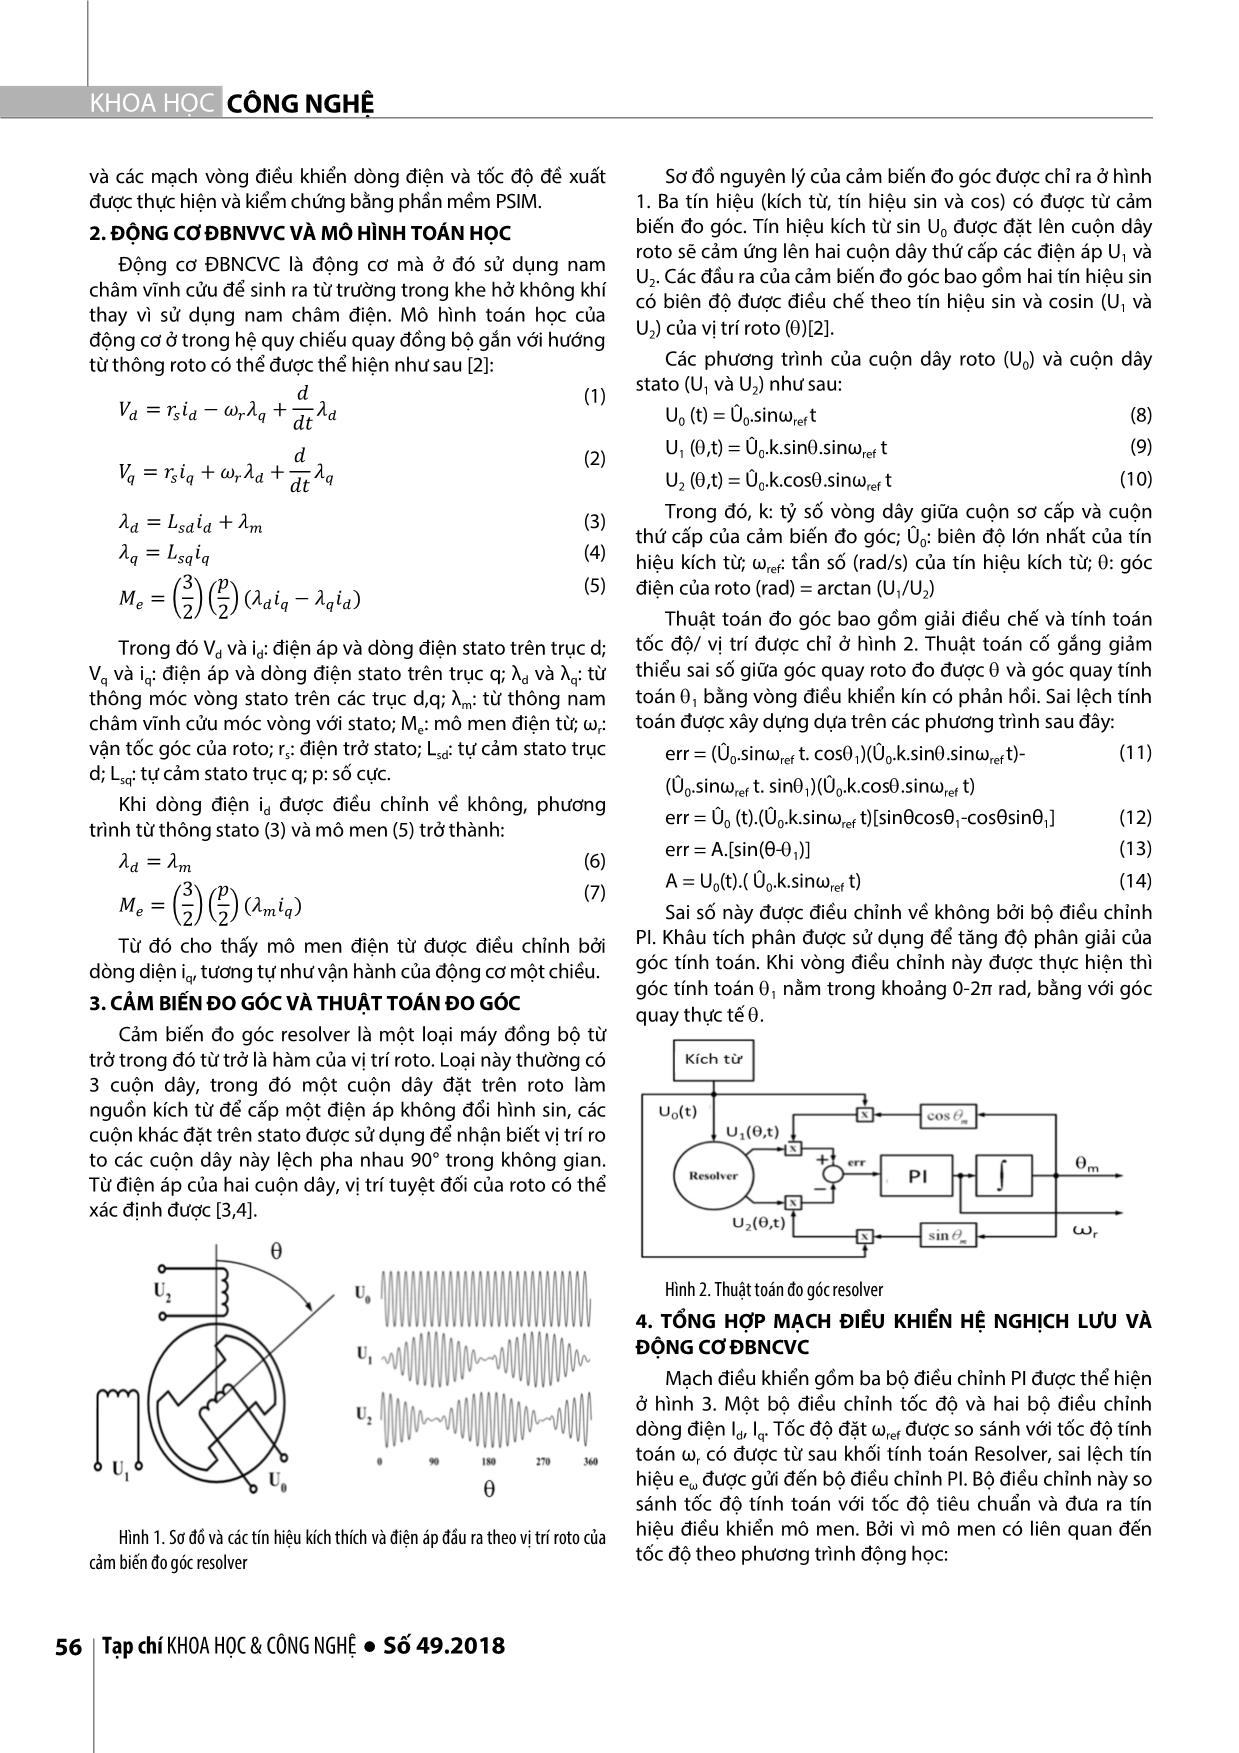 Mô phỏng hệ nghịch lưu - Động cơ đồng bộ nam châm vĩnh cửu sử dụng cảm biến đo góc resolver bằng PSIM trang 2